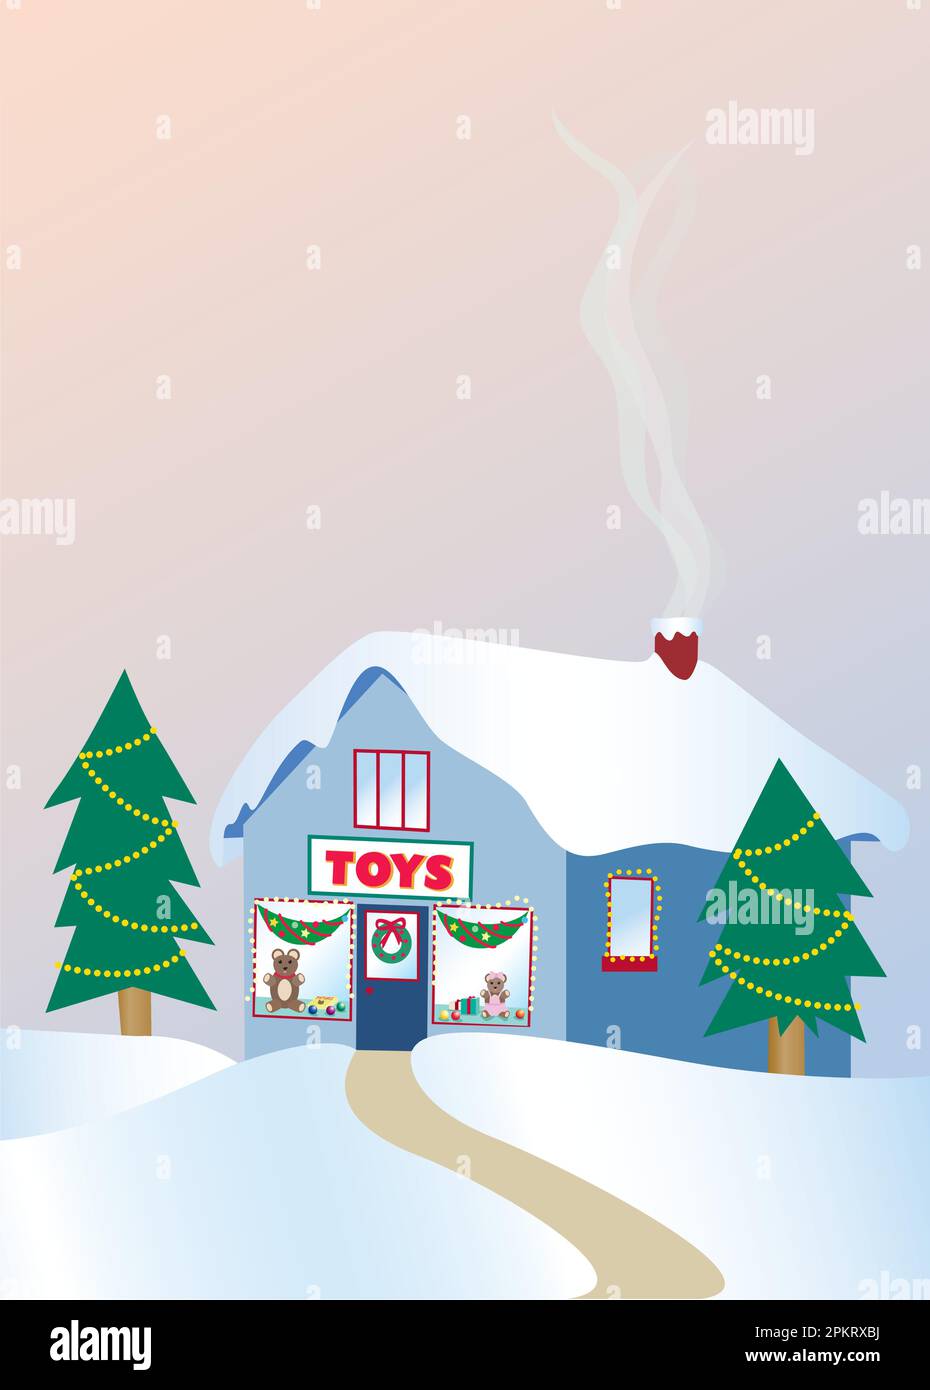 Negozio di giocattoli natalizi - un file Adobe Illustrator salvato come Illustrator 6,0 per una compatibilità ottimale. Vedere i dettagli di seguito... Illustrazione Vettoriale